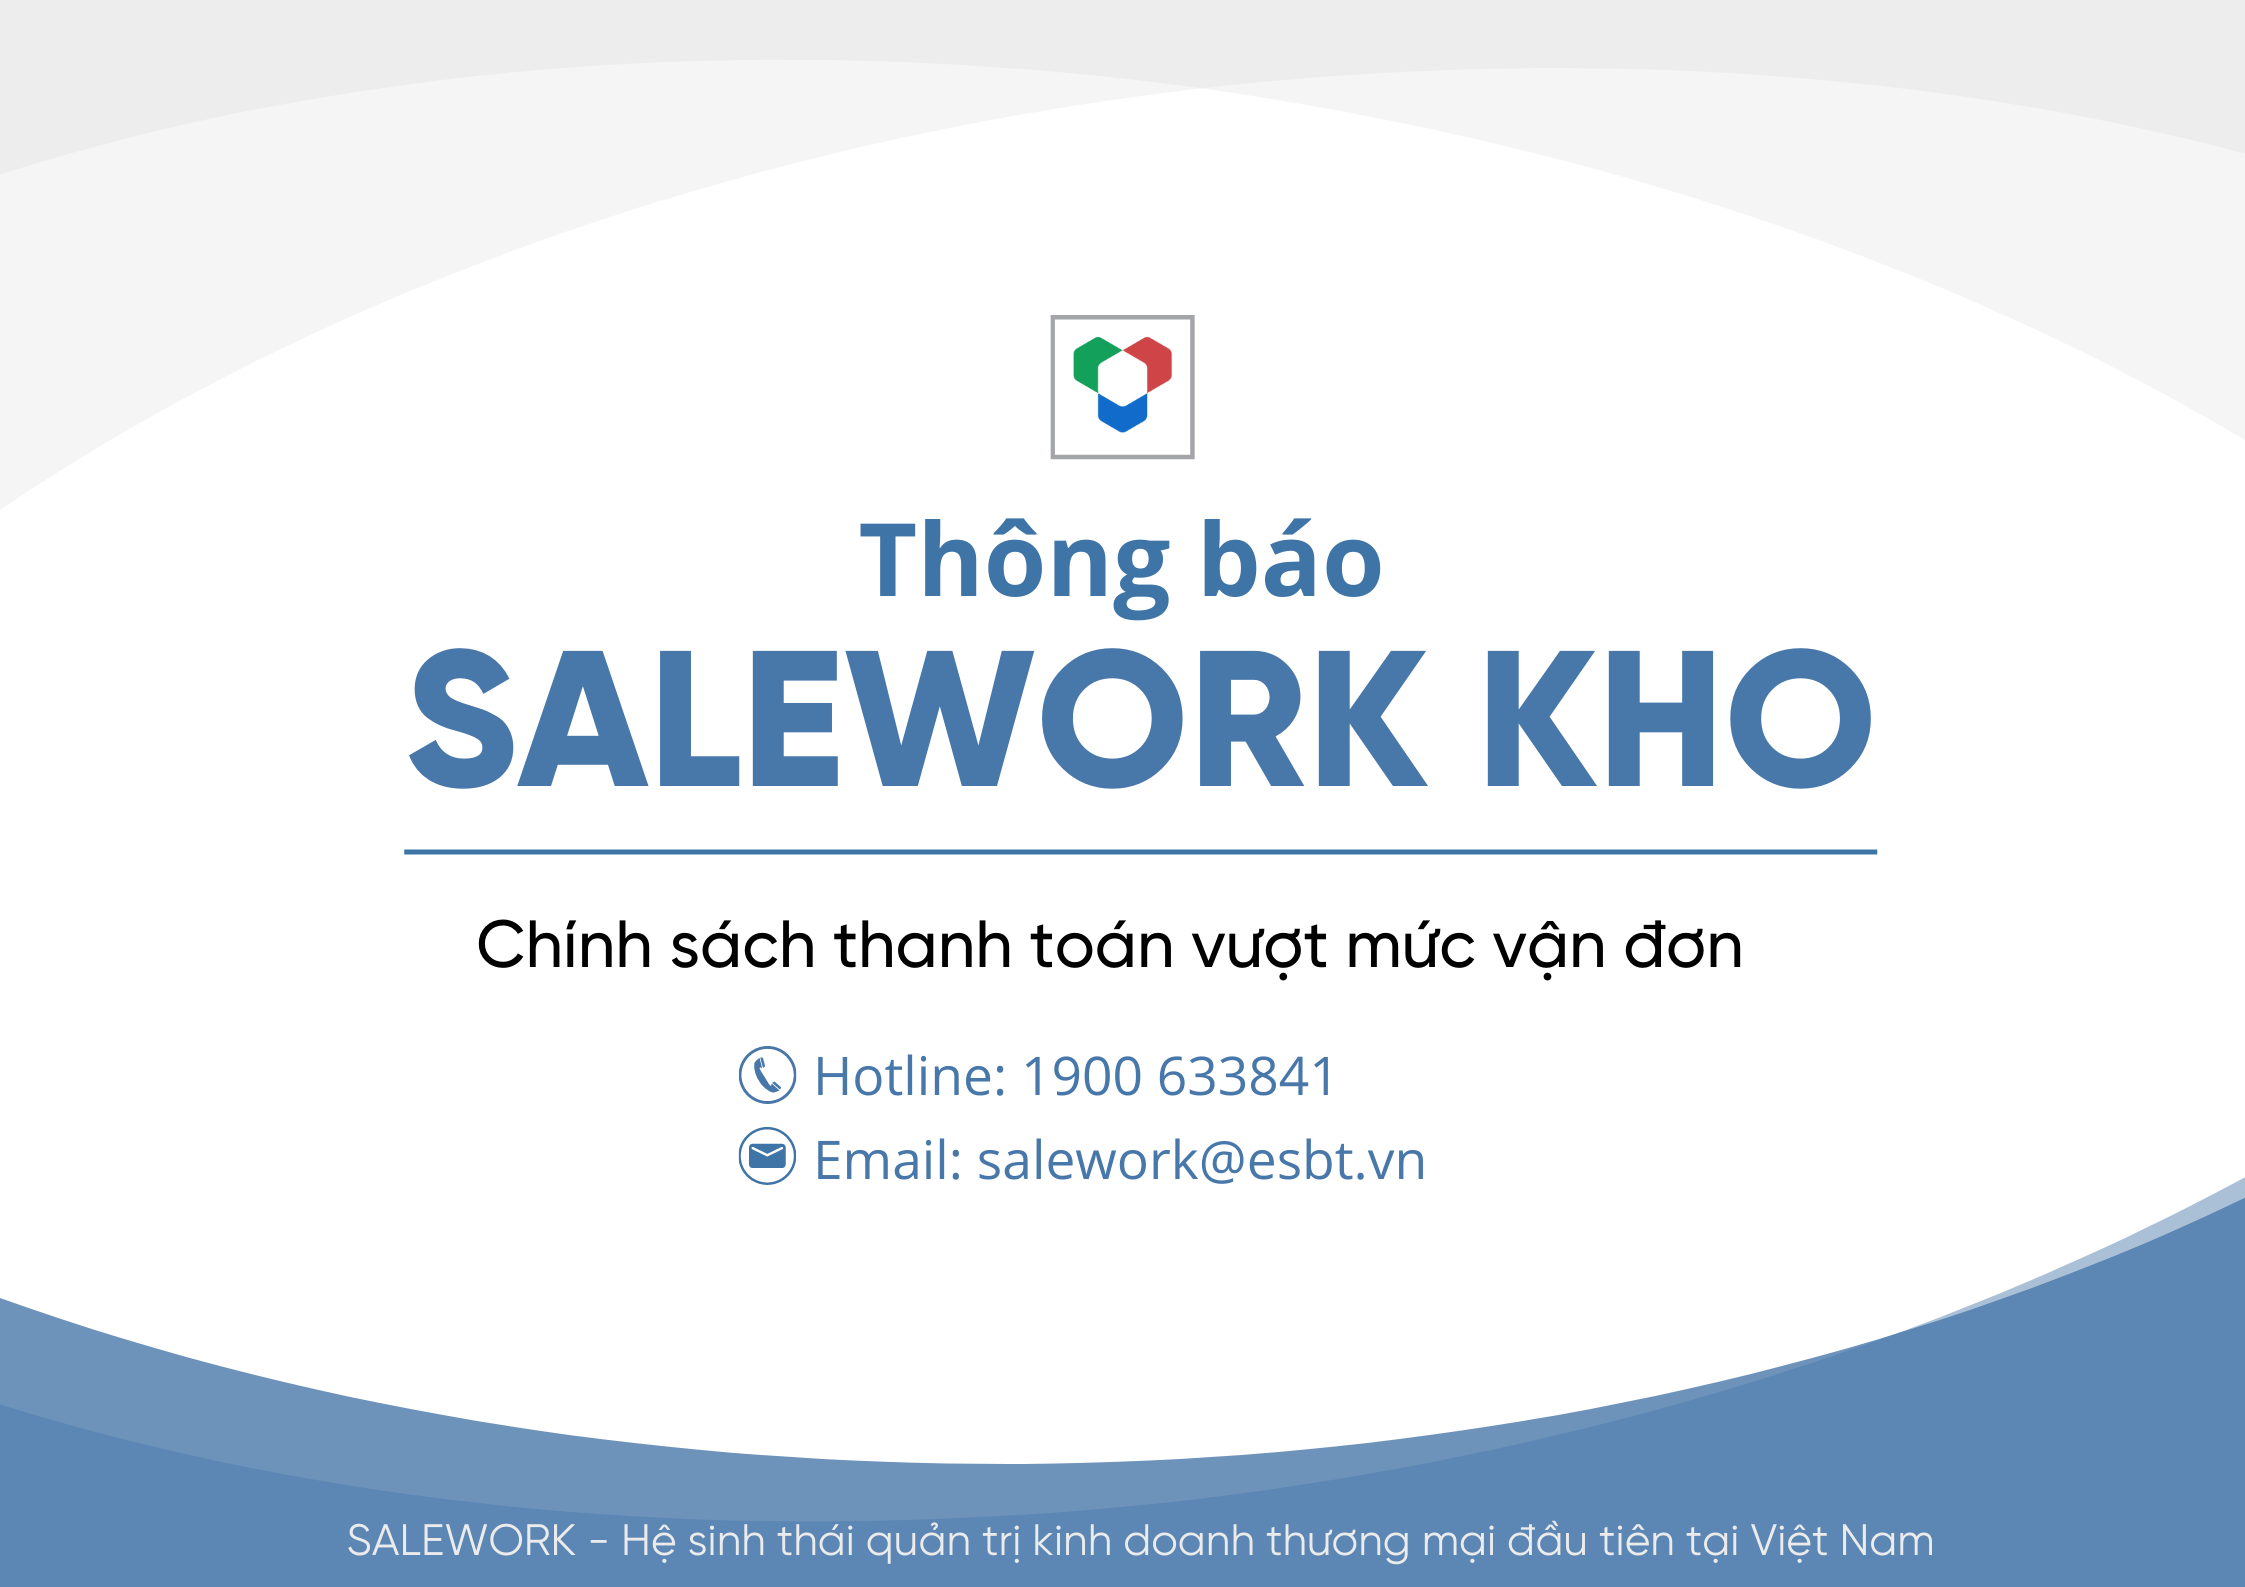 [Thông báo] Cập nhật mới nhất về chính sách thanh toán vượt mức vận đơn tại Salework Kho - 38